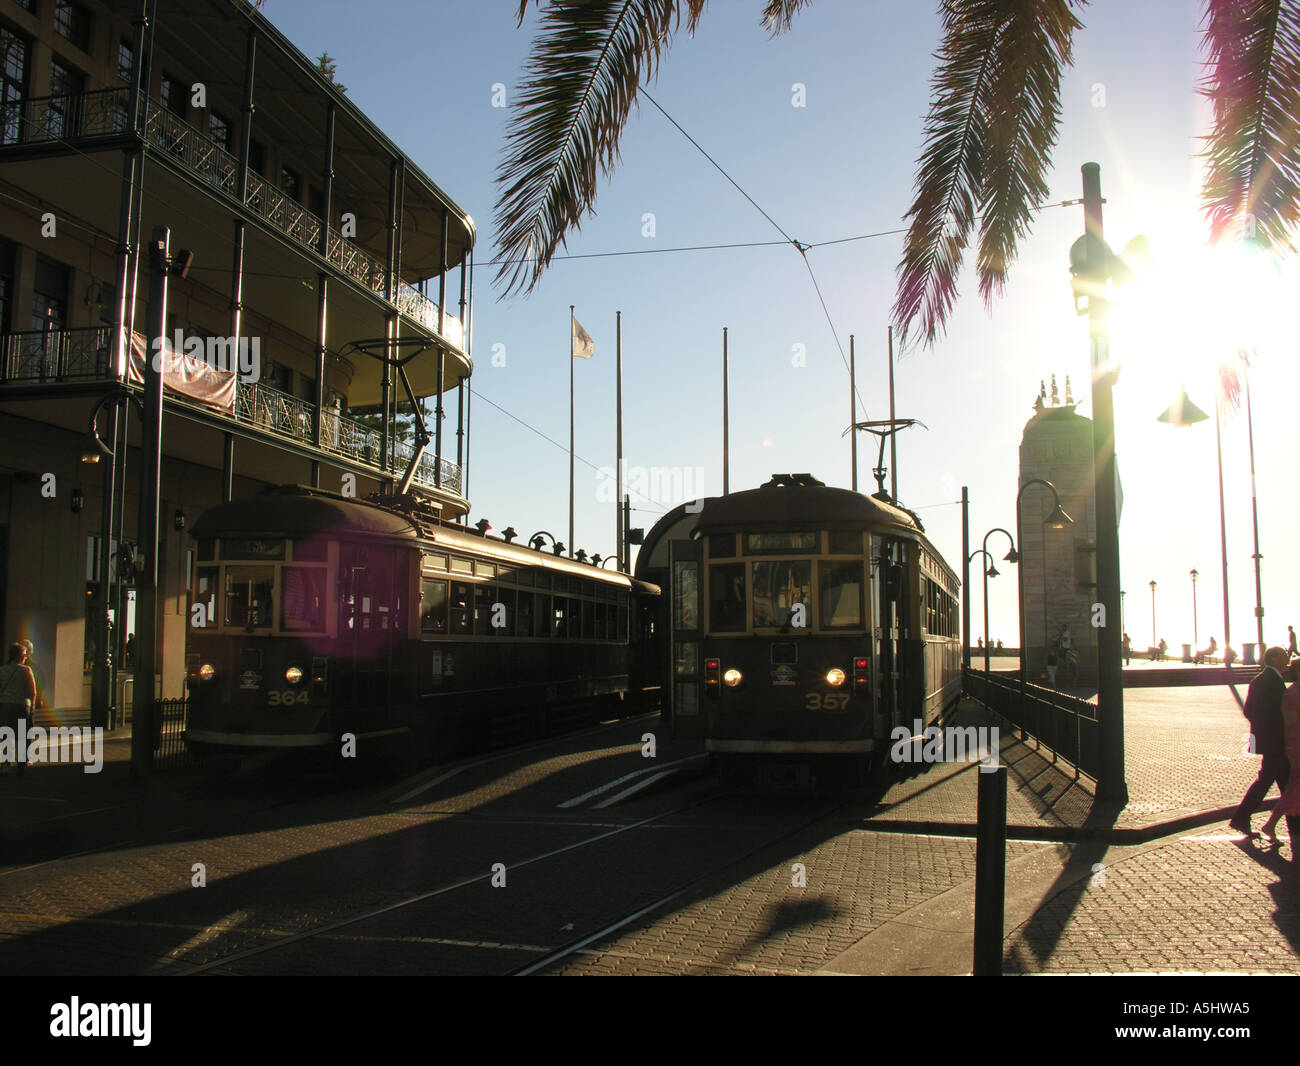 Station de tramway à Moseley Square Glenelg Australie du Sud Banque D'Images